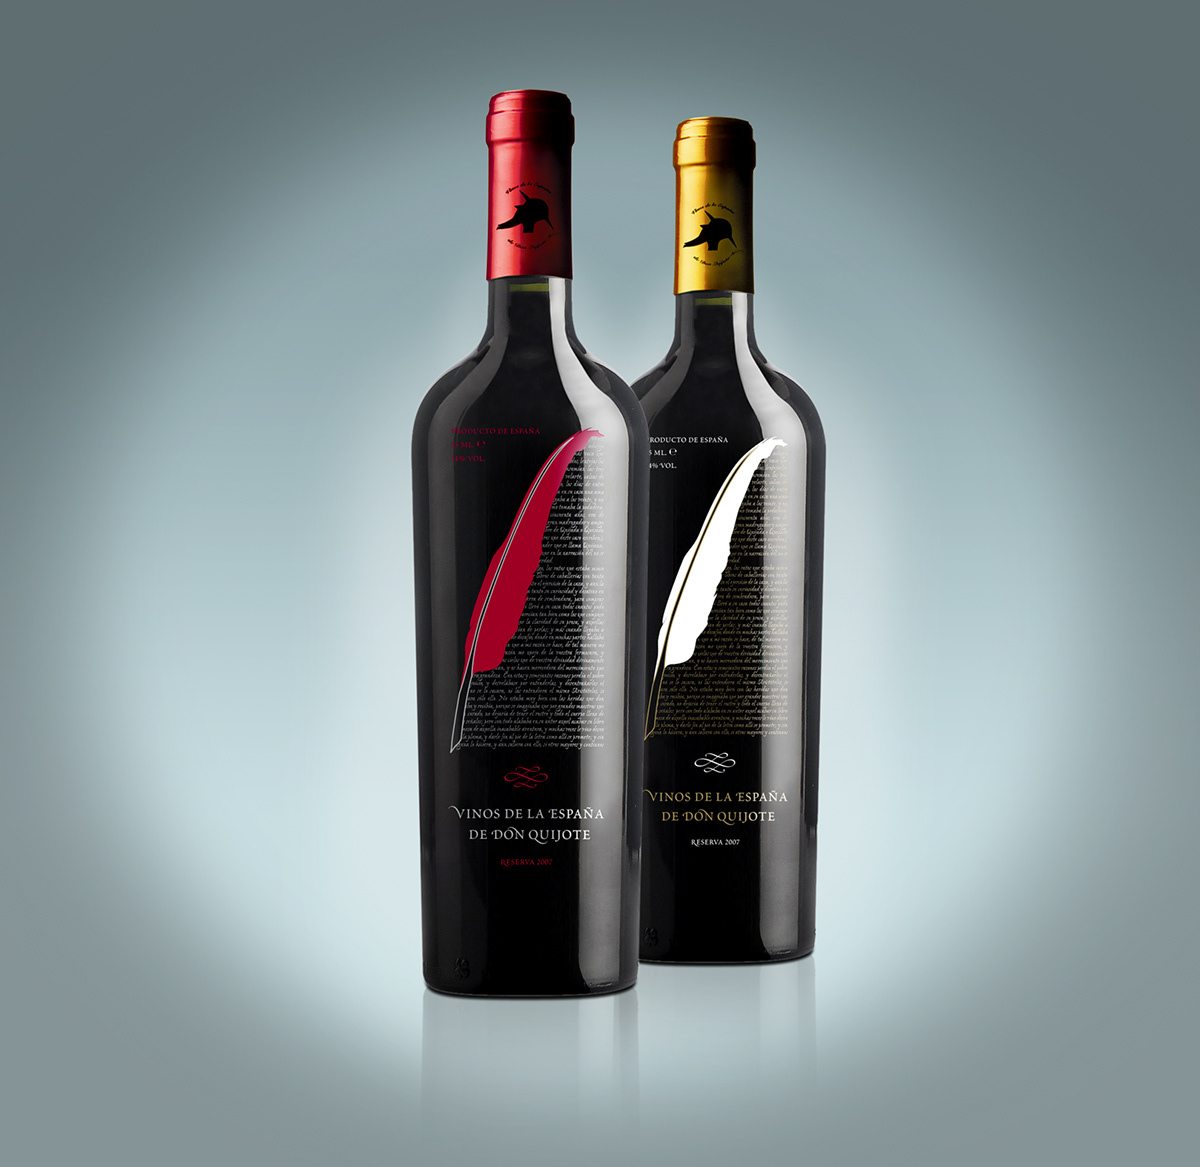 Tierra de Viñedos vino wine botella etiqueta Packaging españa spain Castilla-La Mancha Qijote